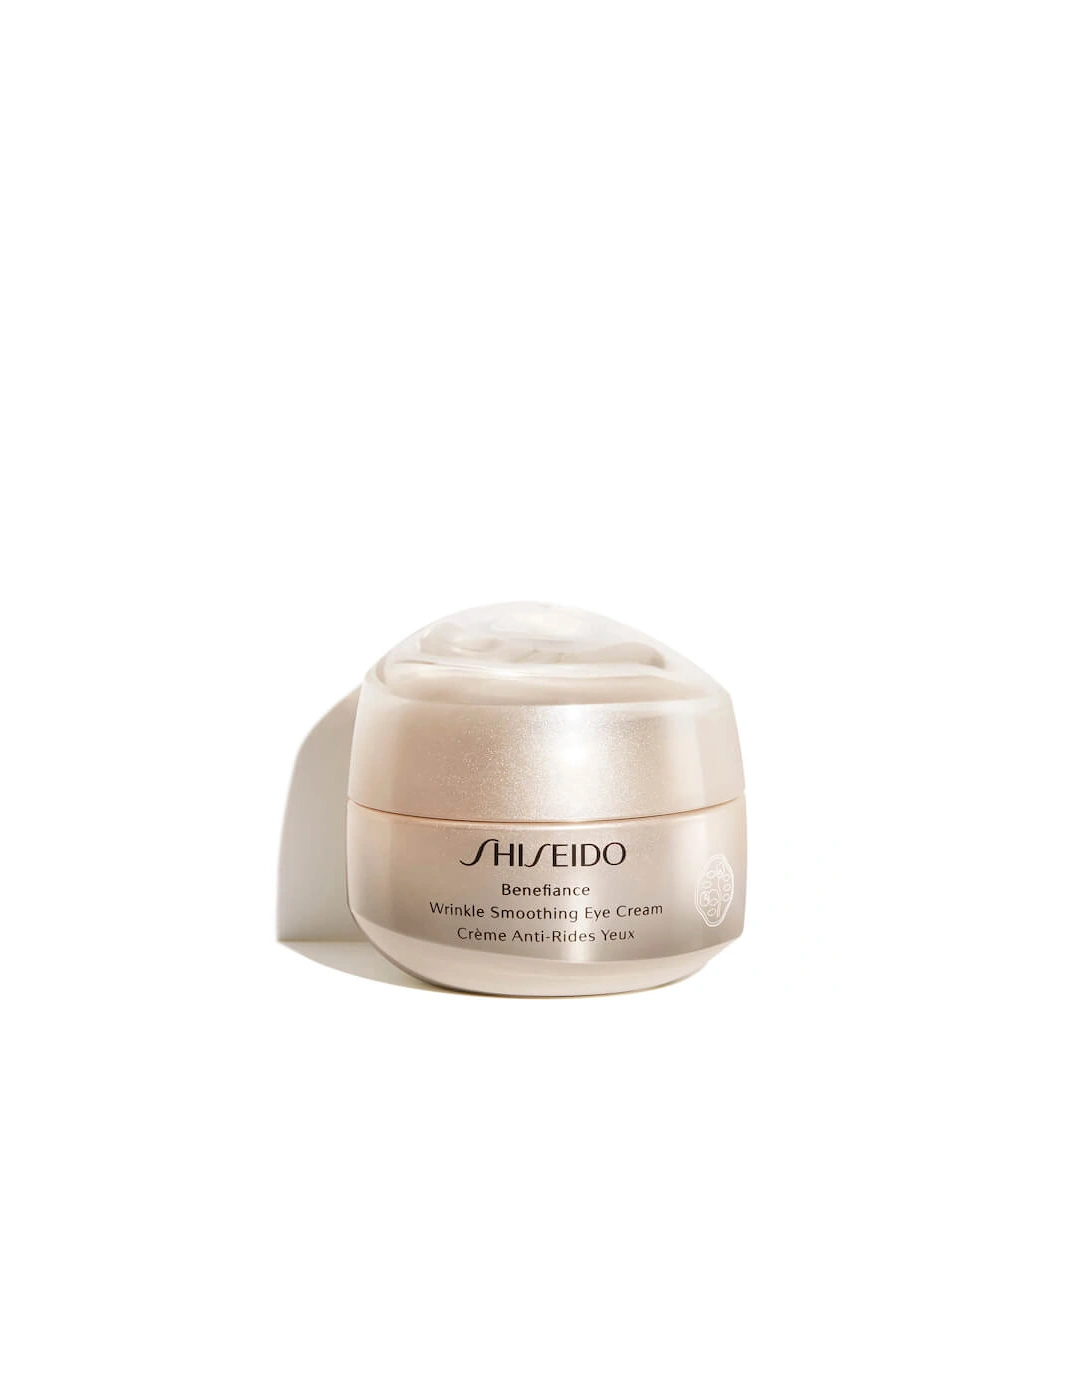 Benefiance Wrinkle Smoothing Eye Cream 15ml - Shiseido, 2 of 1